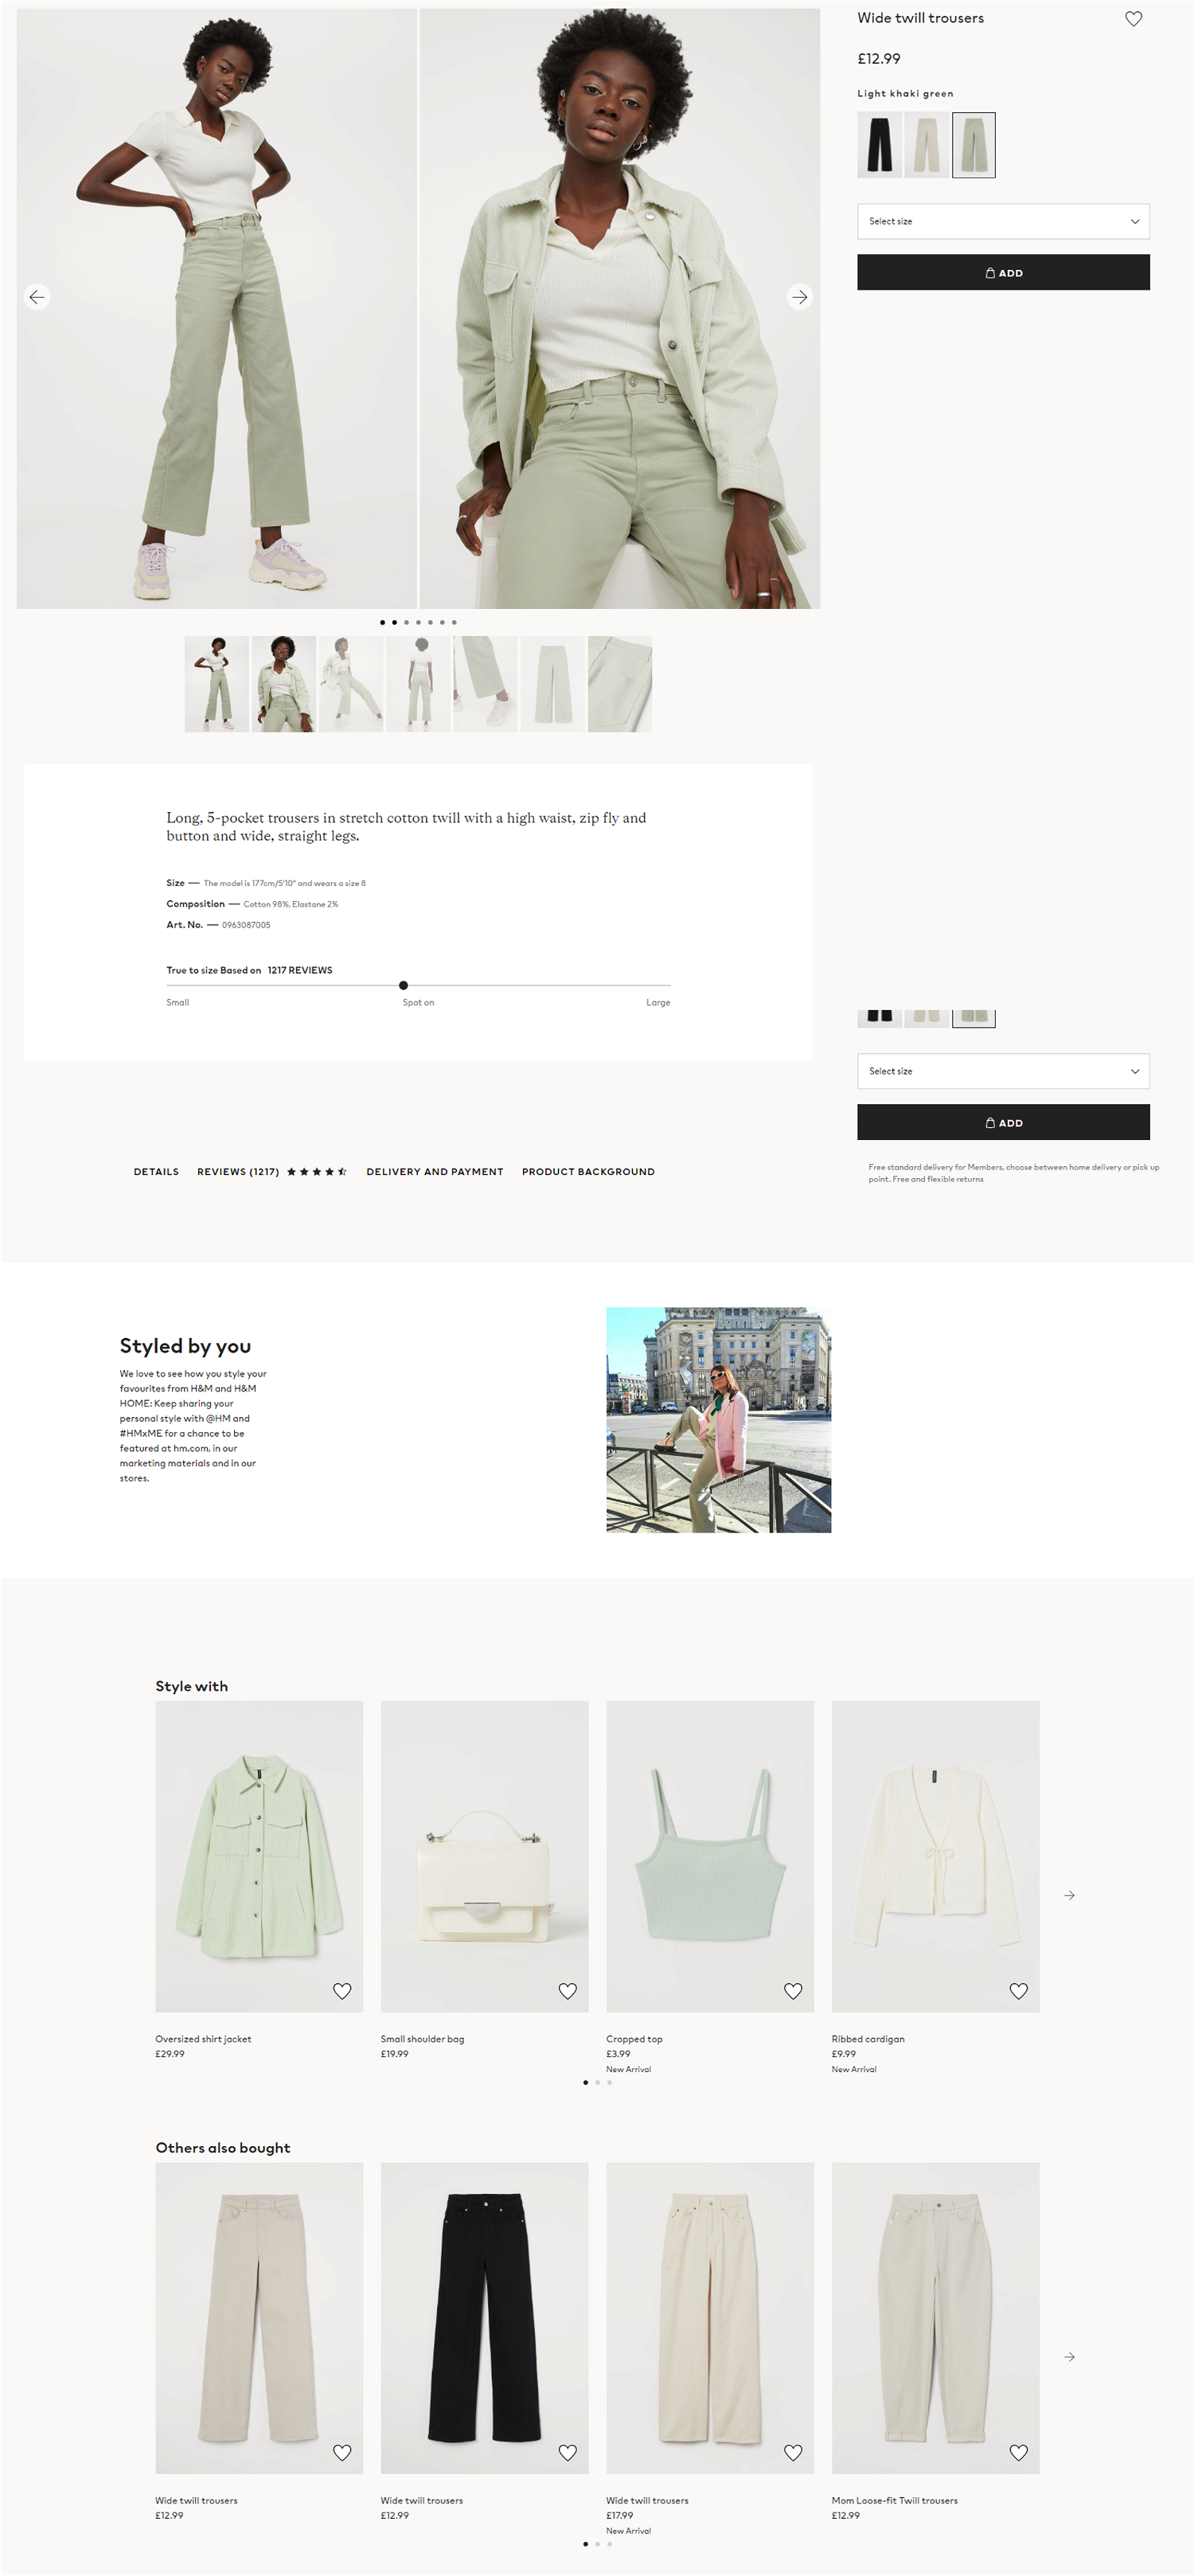 H&M's desktop product page